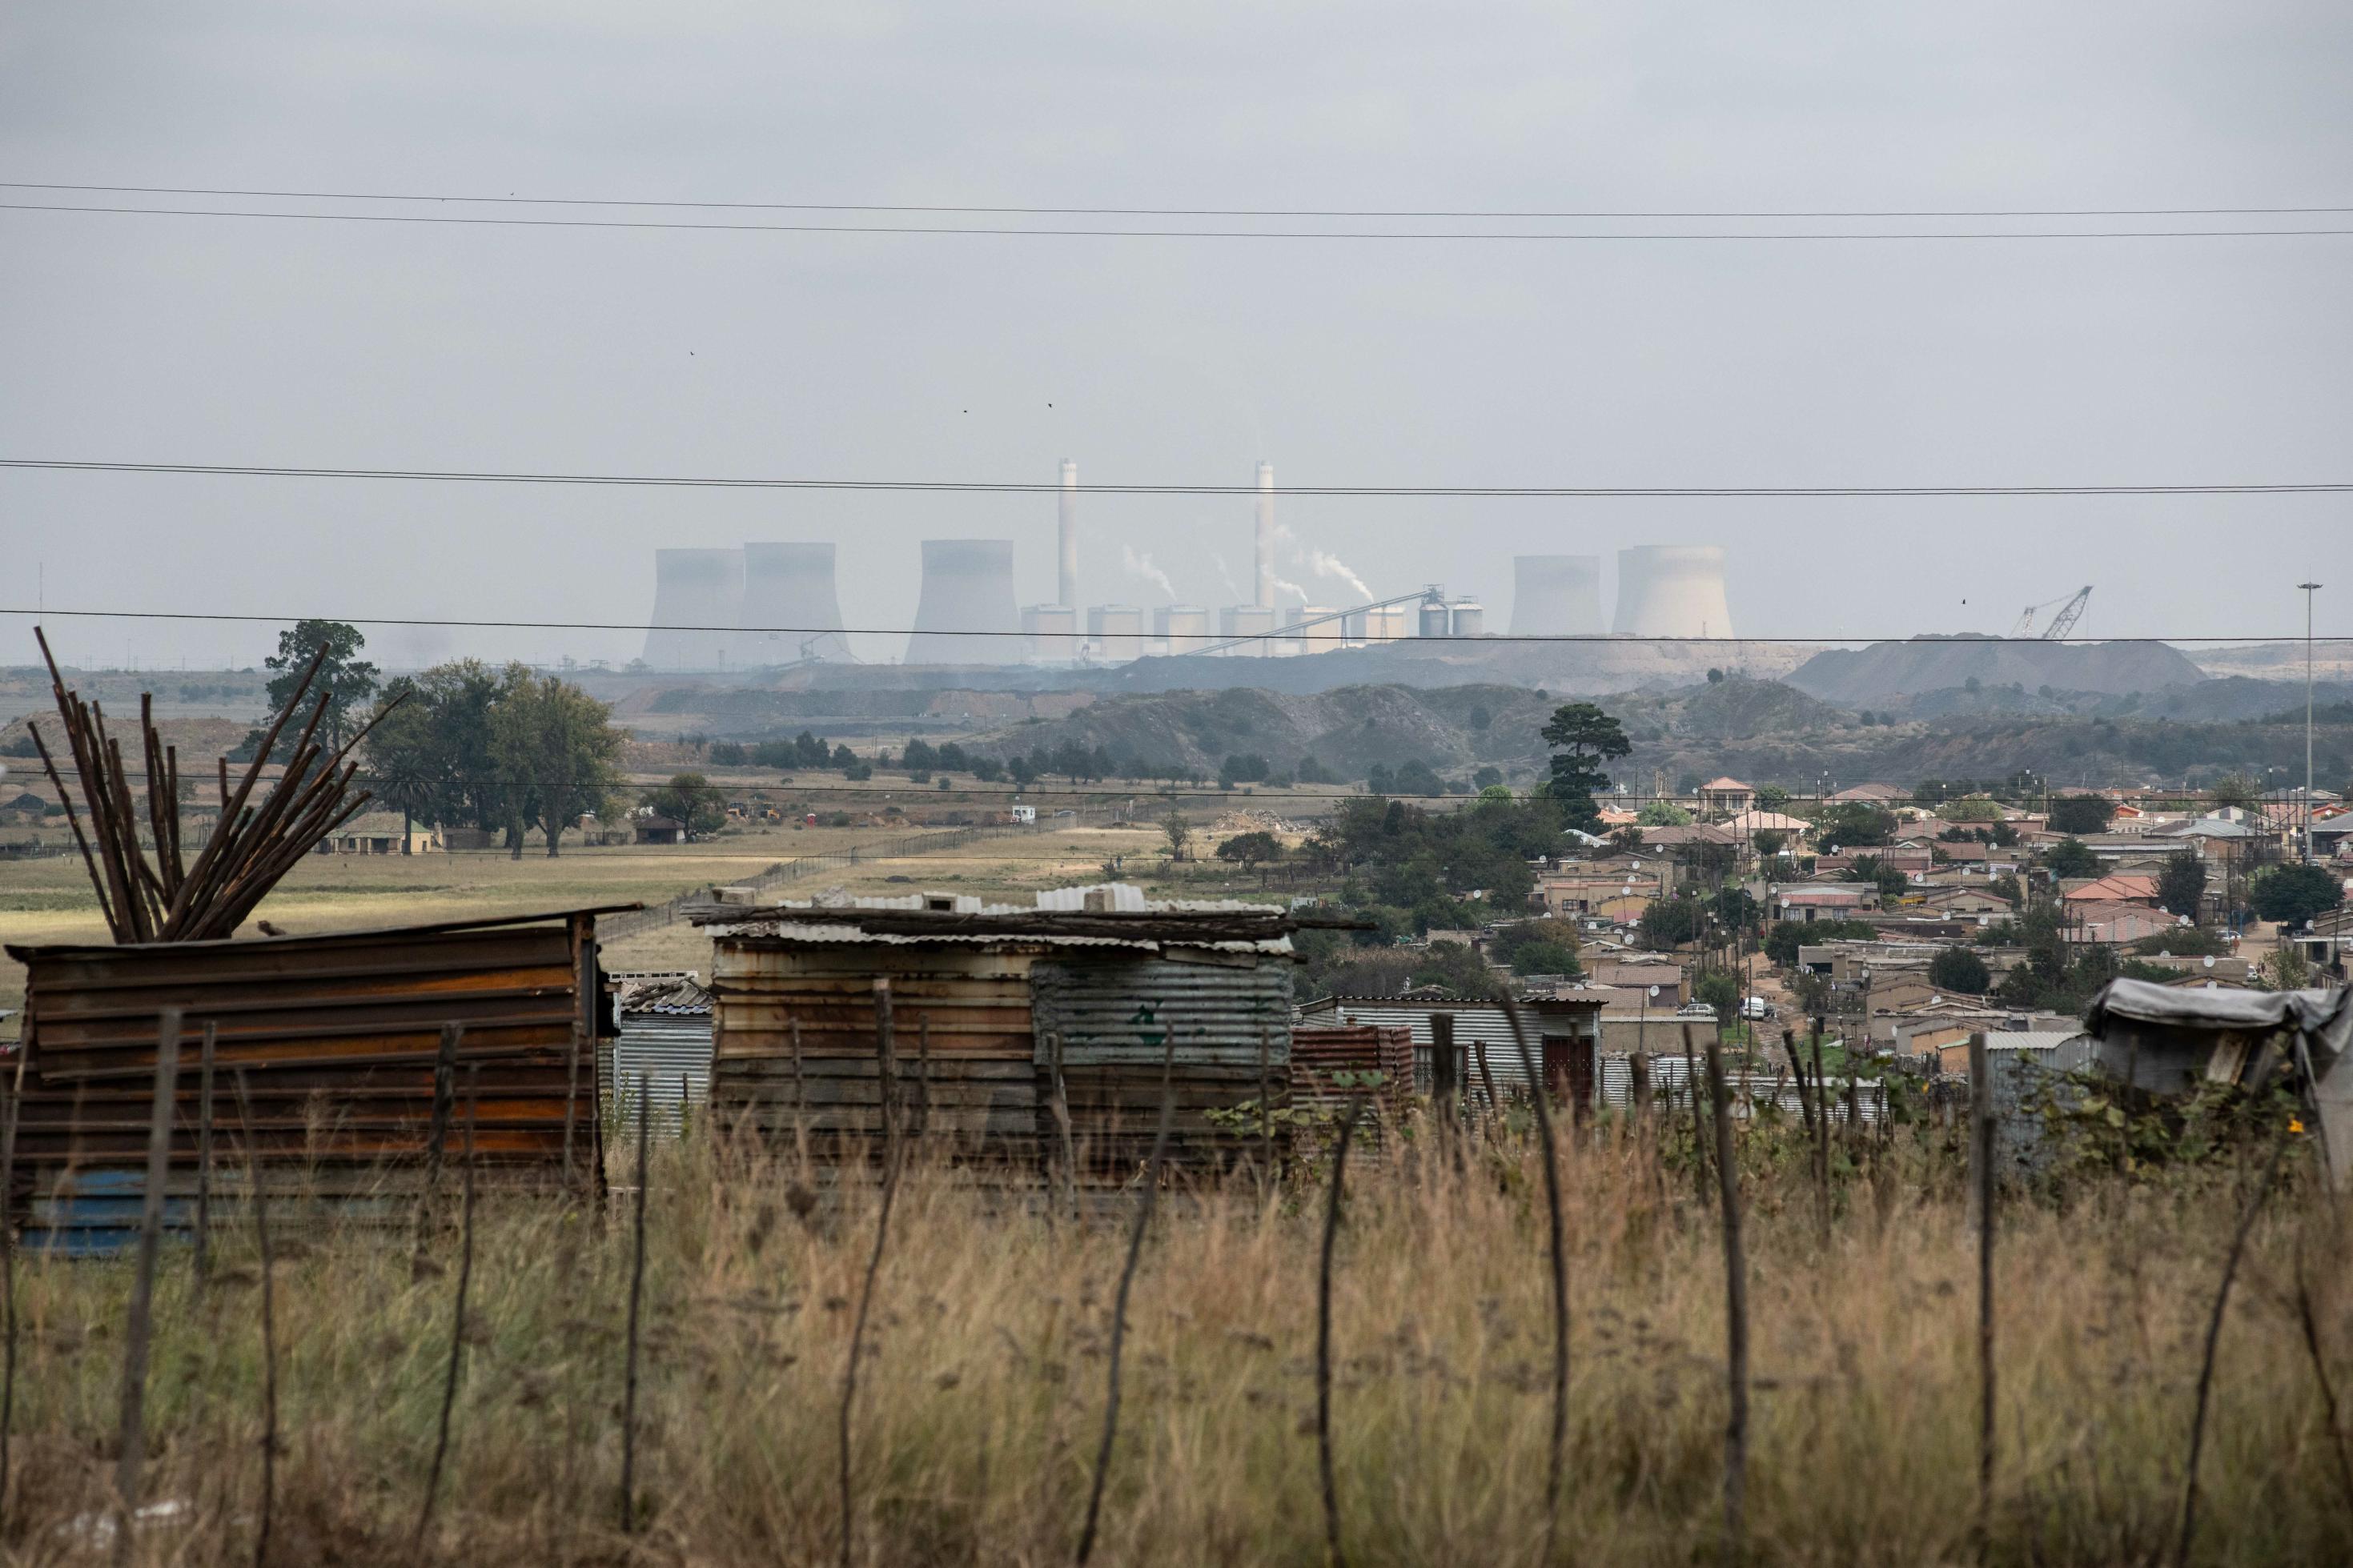 Hinter einer Siedlung kleiner Häuser sieht man ein Kohlekraftwerk am Horizont, das toxische Abgase in die Luft bläst.